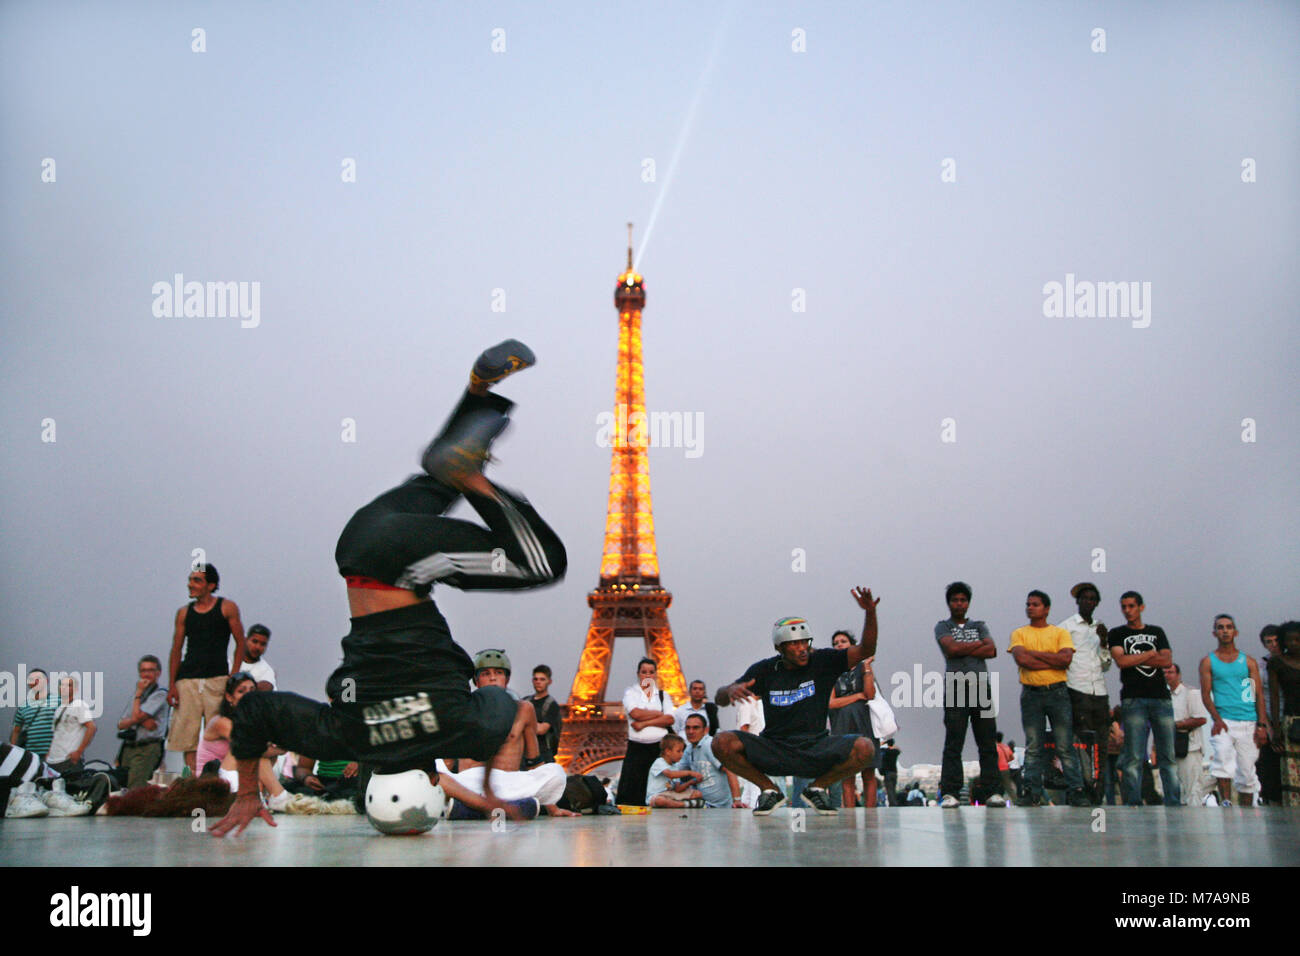 Breakdancer, eine Menge von Touristen in der Nähe von Eiffelturm unterhalten wie abends mit den Städten Lichter einschalten, 1. Juli 2009, Paris, Frankreich. Stockfoto